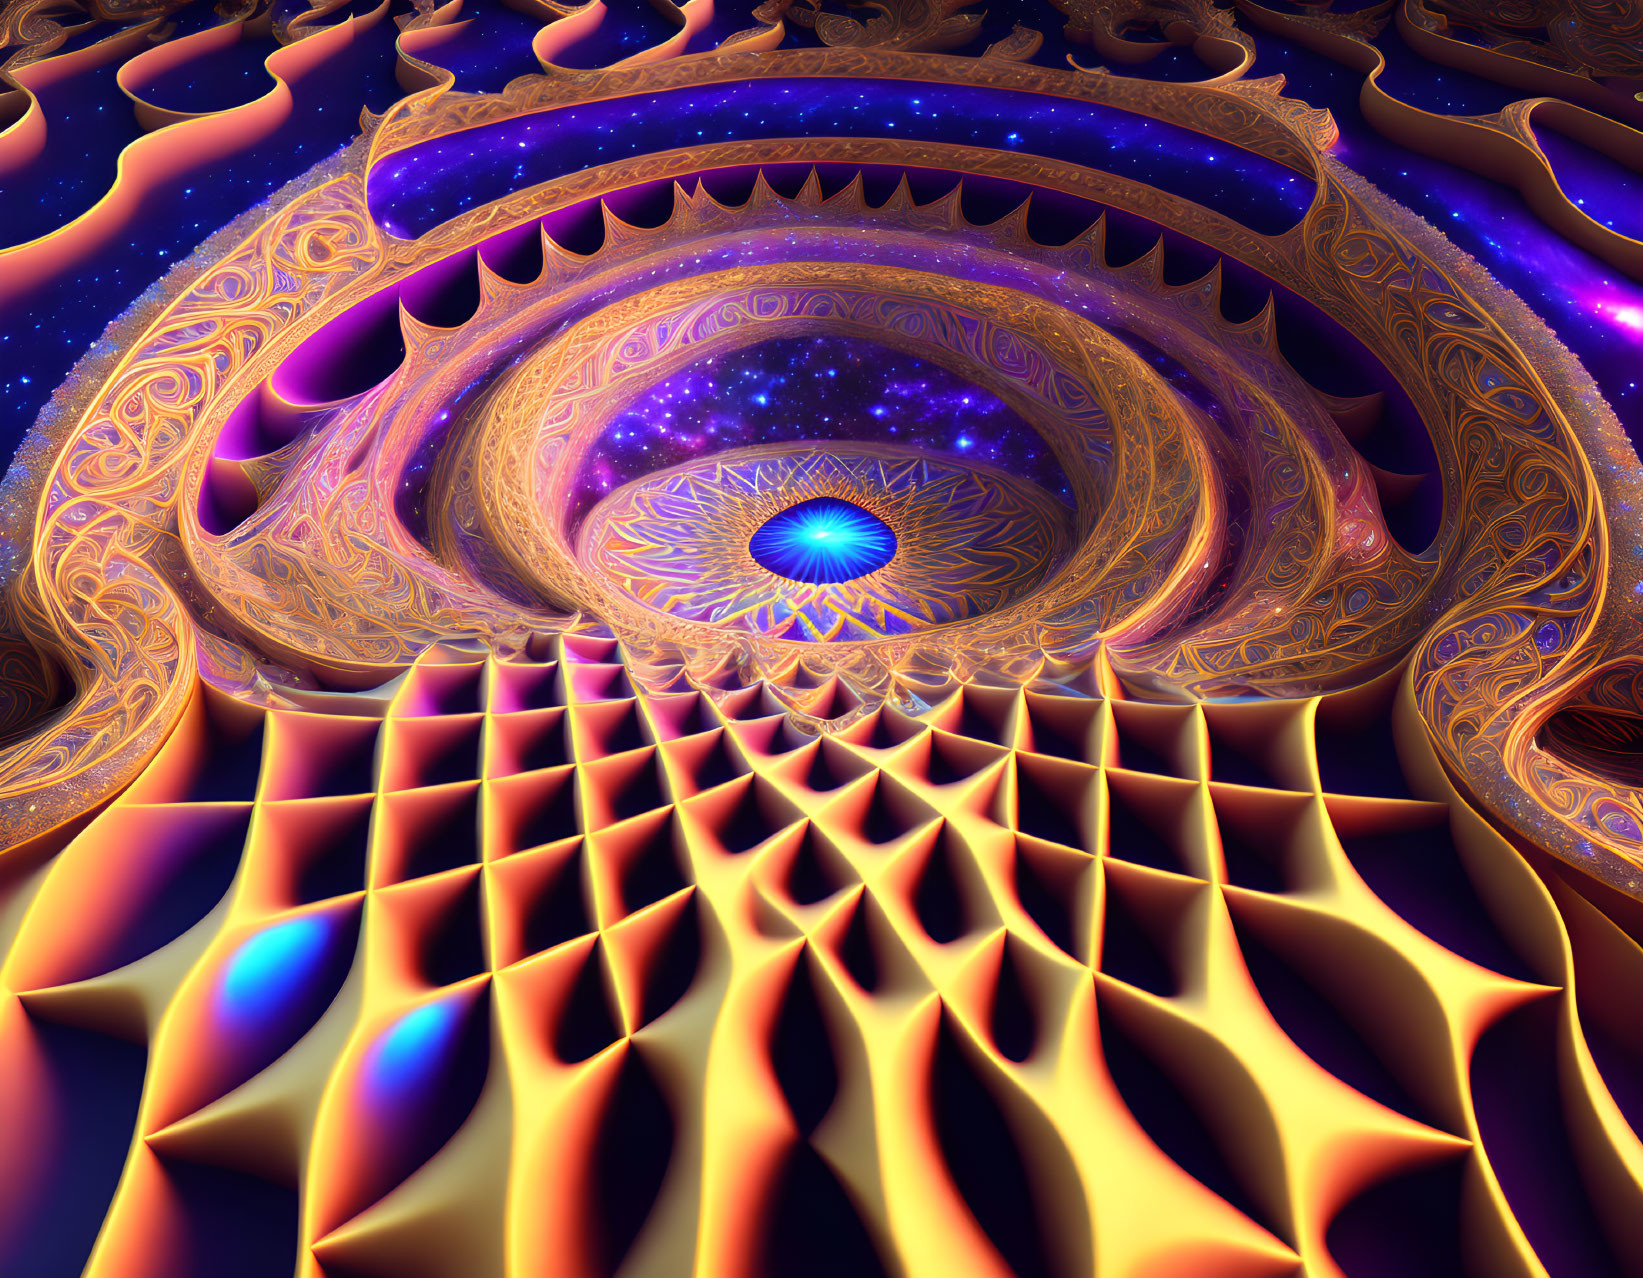 Colorful fractal image: Golden patterns, blue eye, purples, oranges